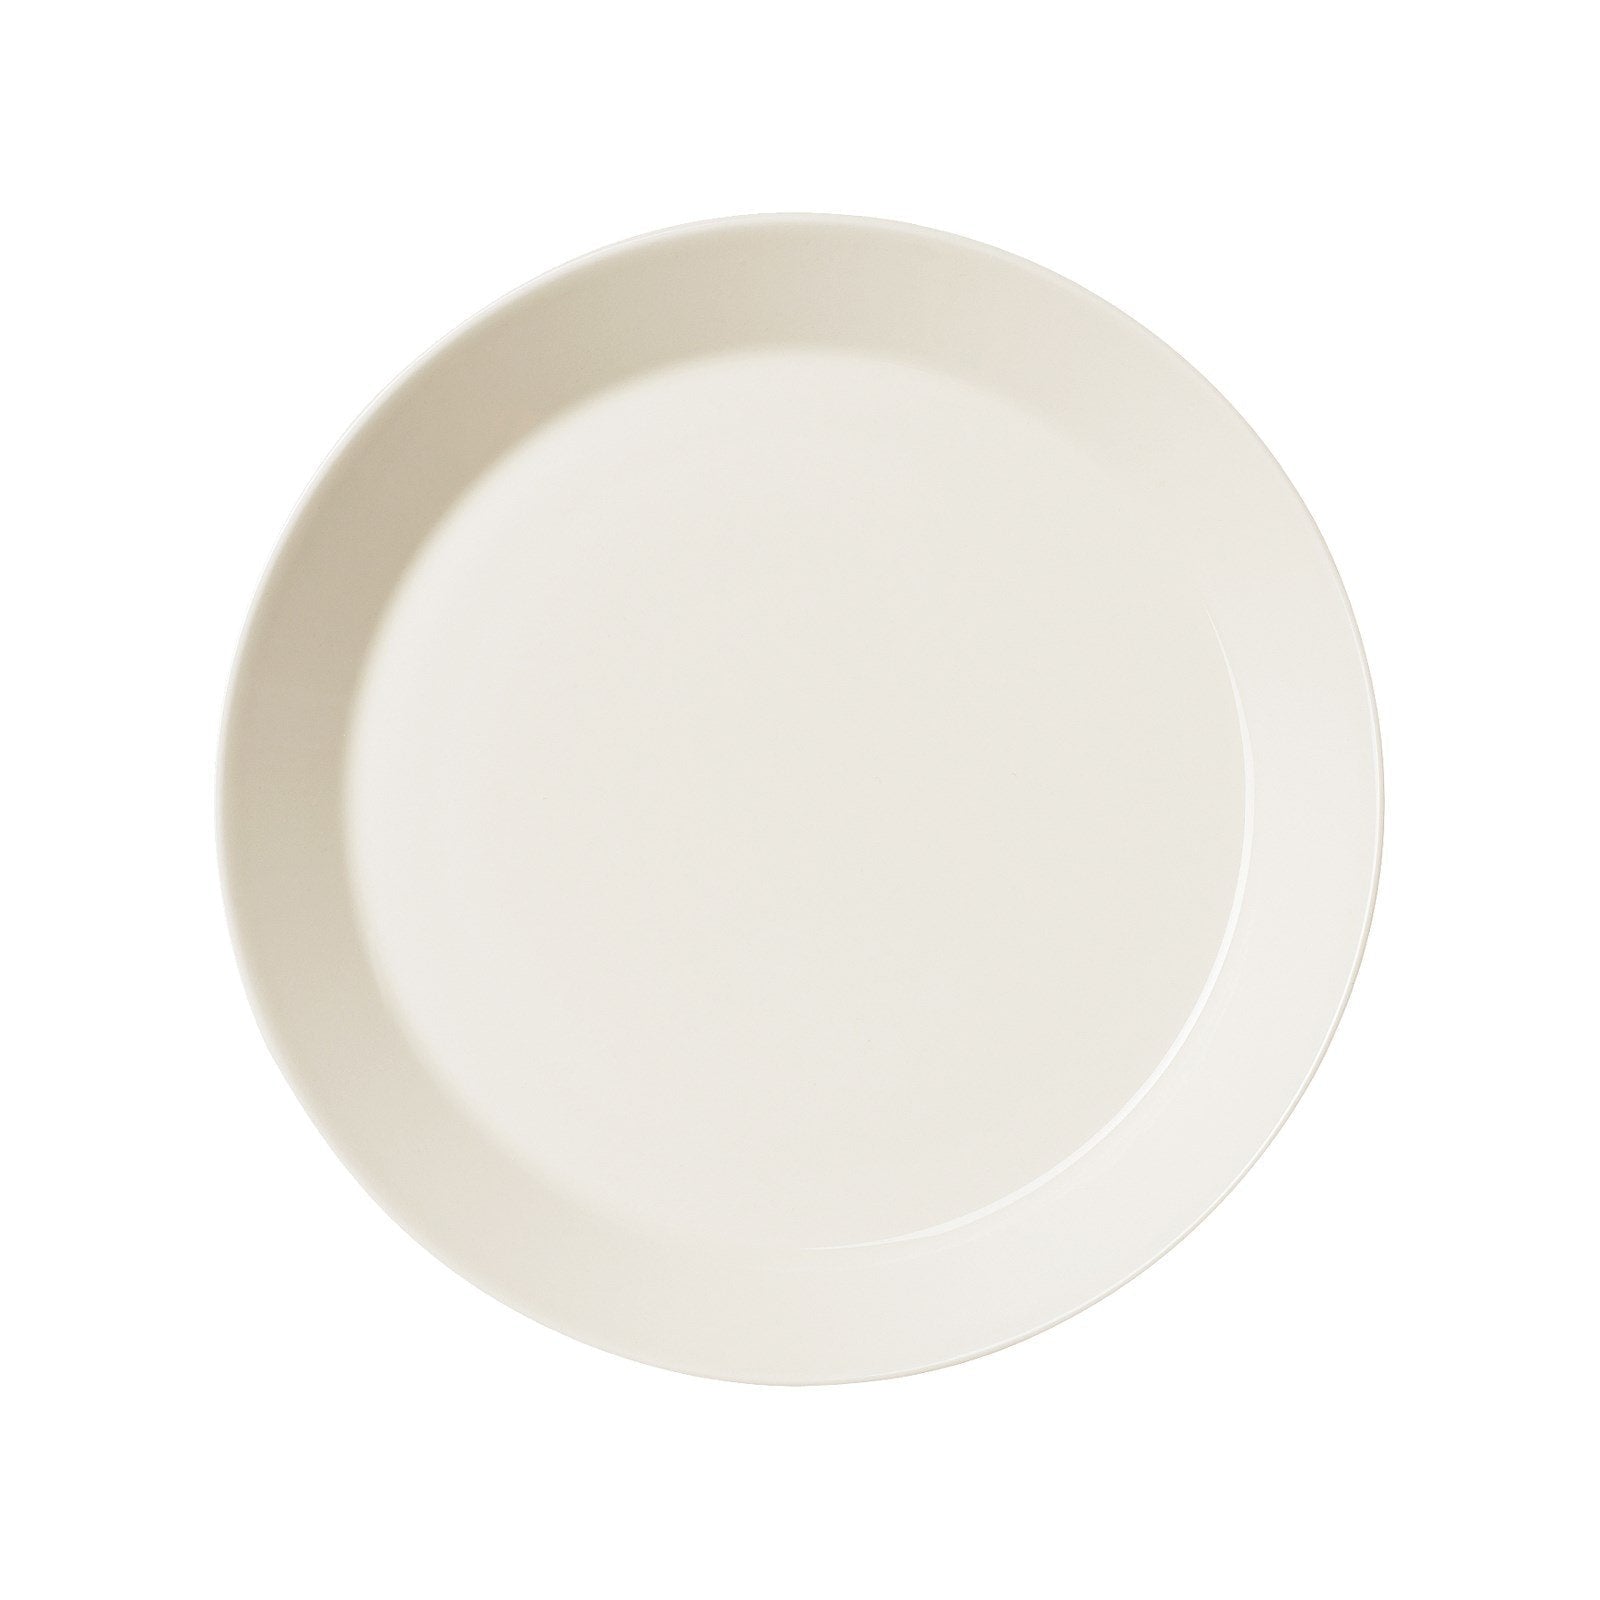 Iittala Teema plate flat hvit, 26 cm